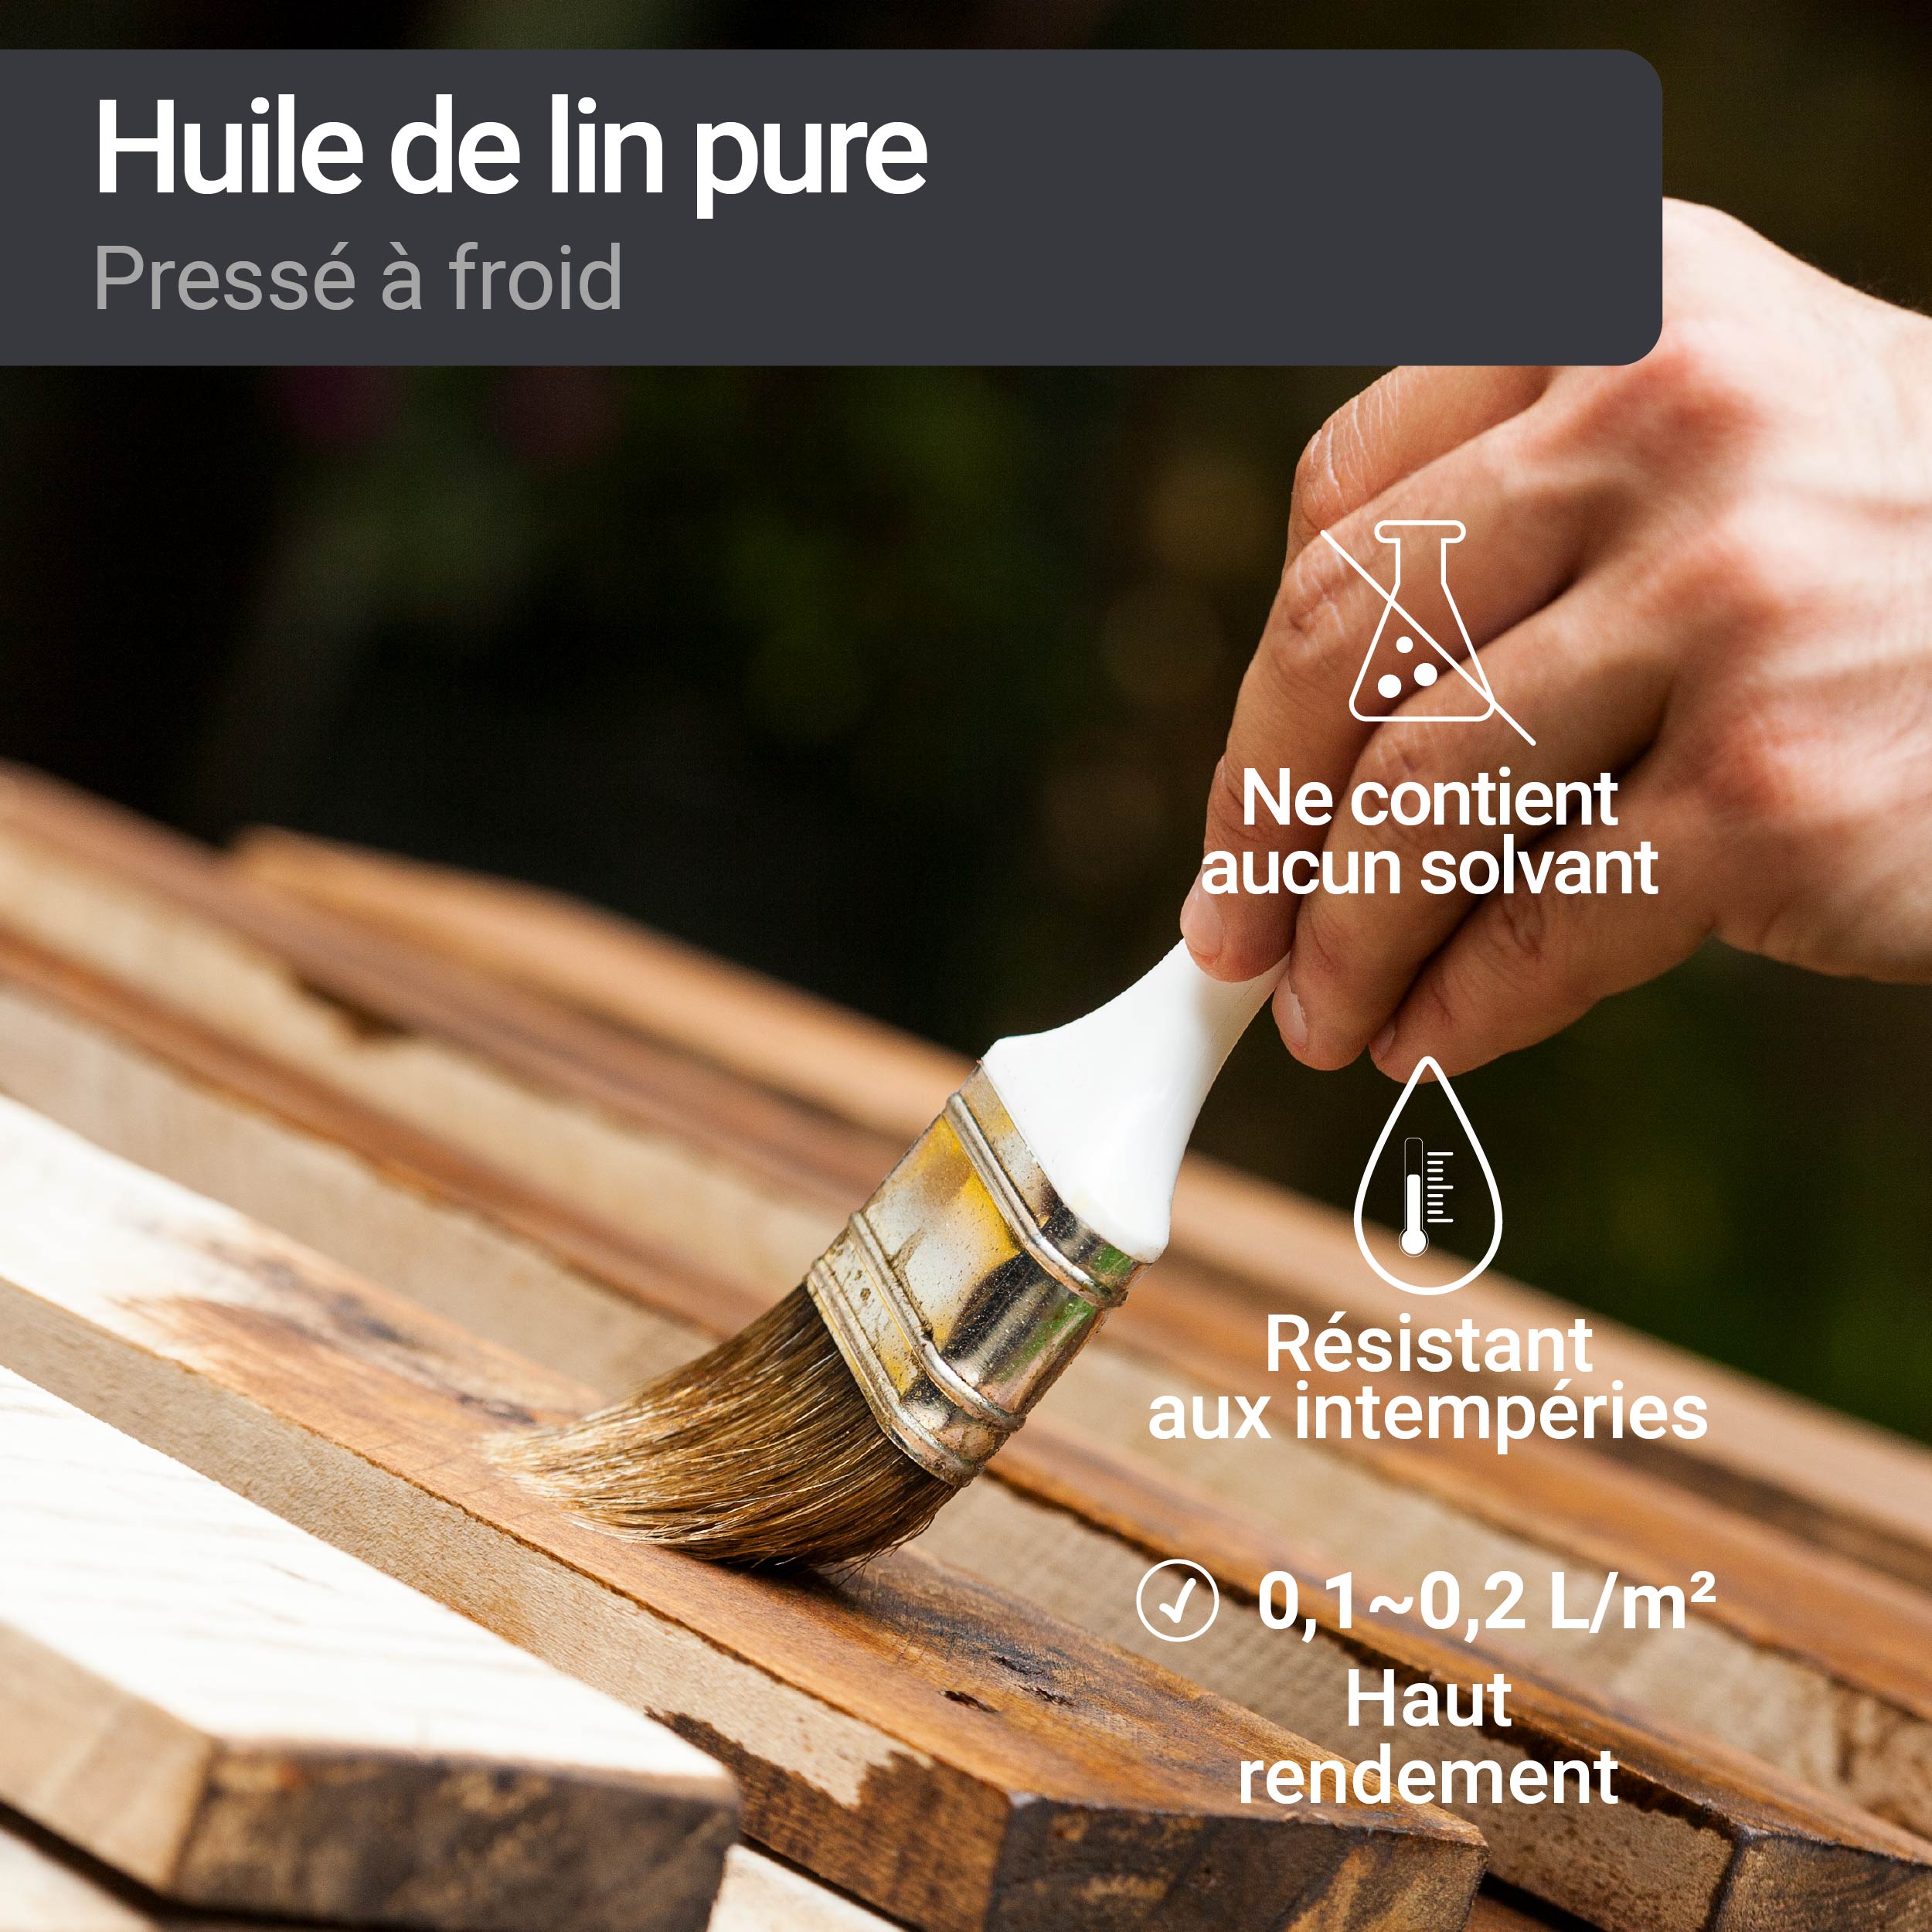 Huile de lin : les utilisations pour le traitement du bois